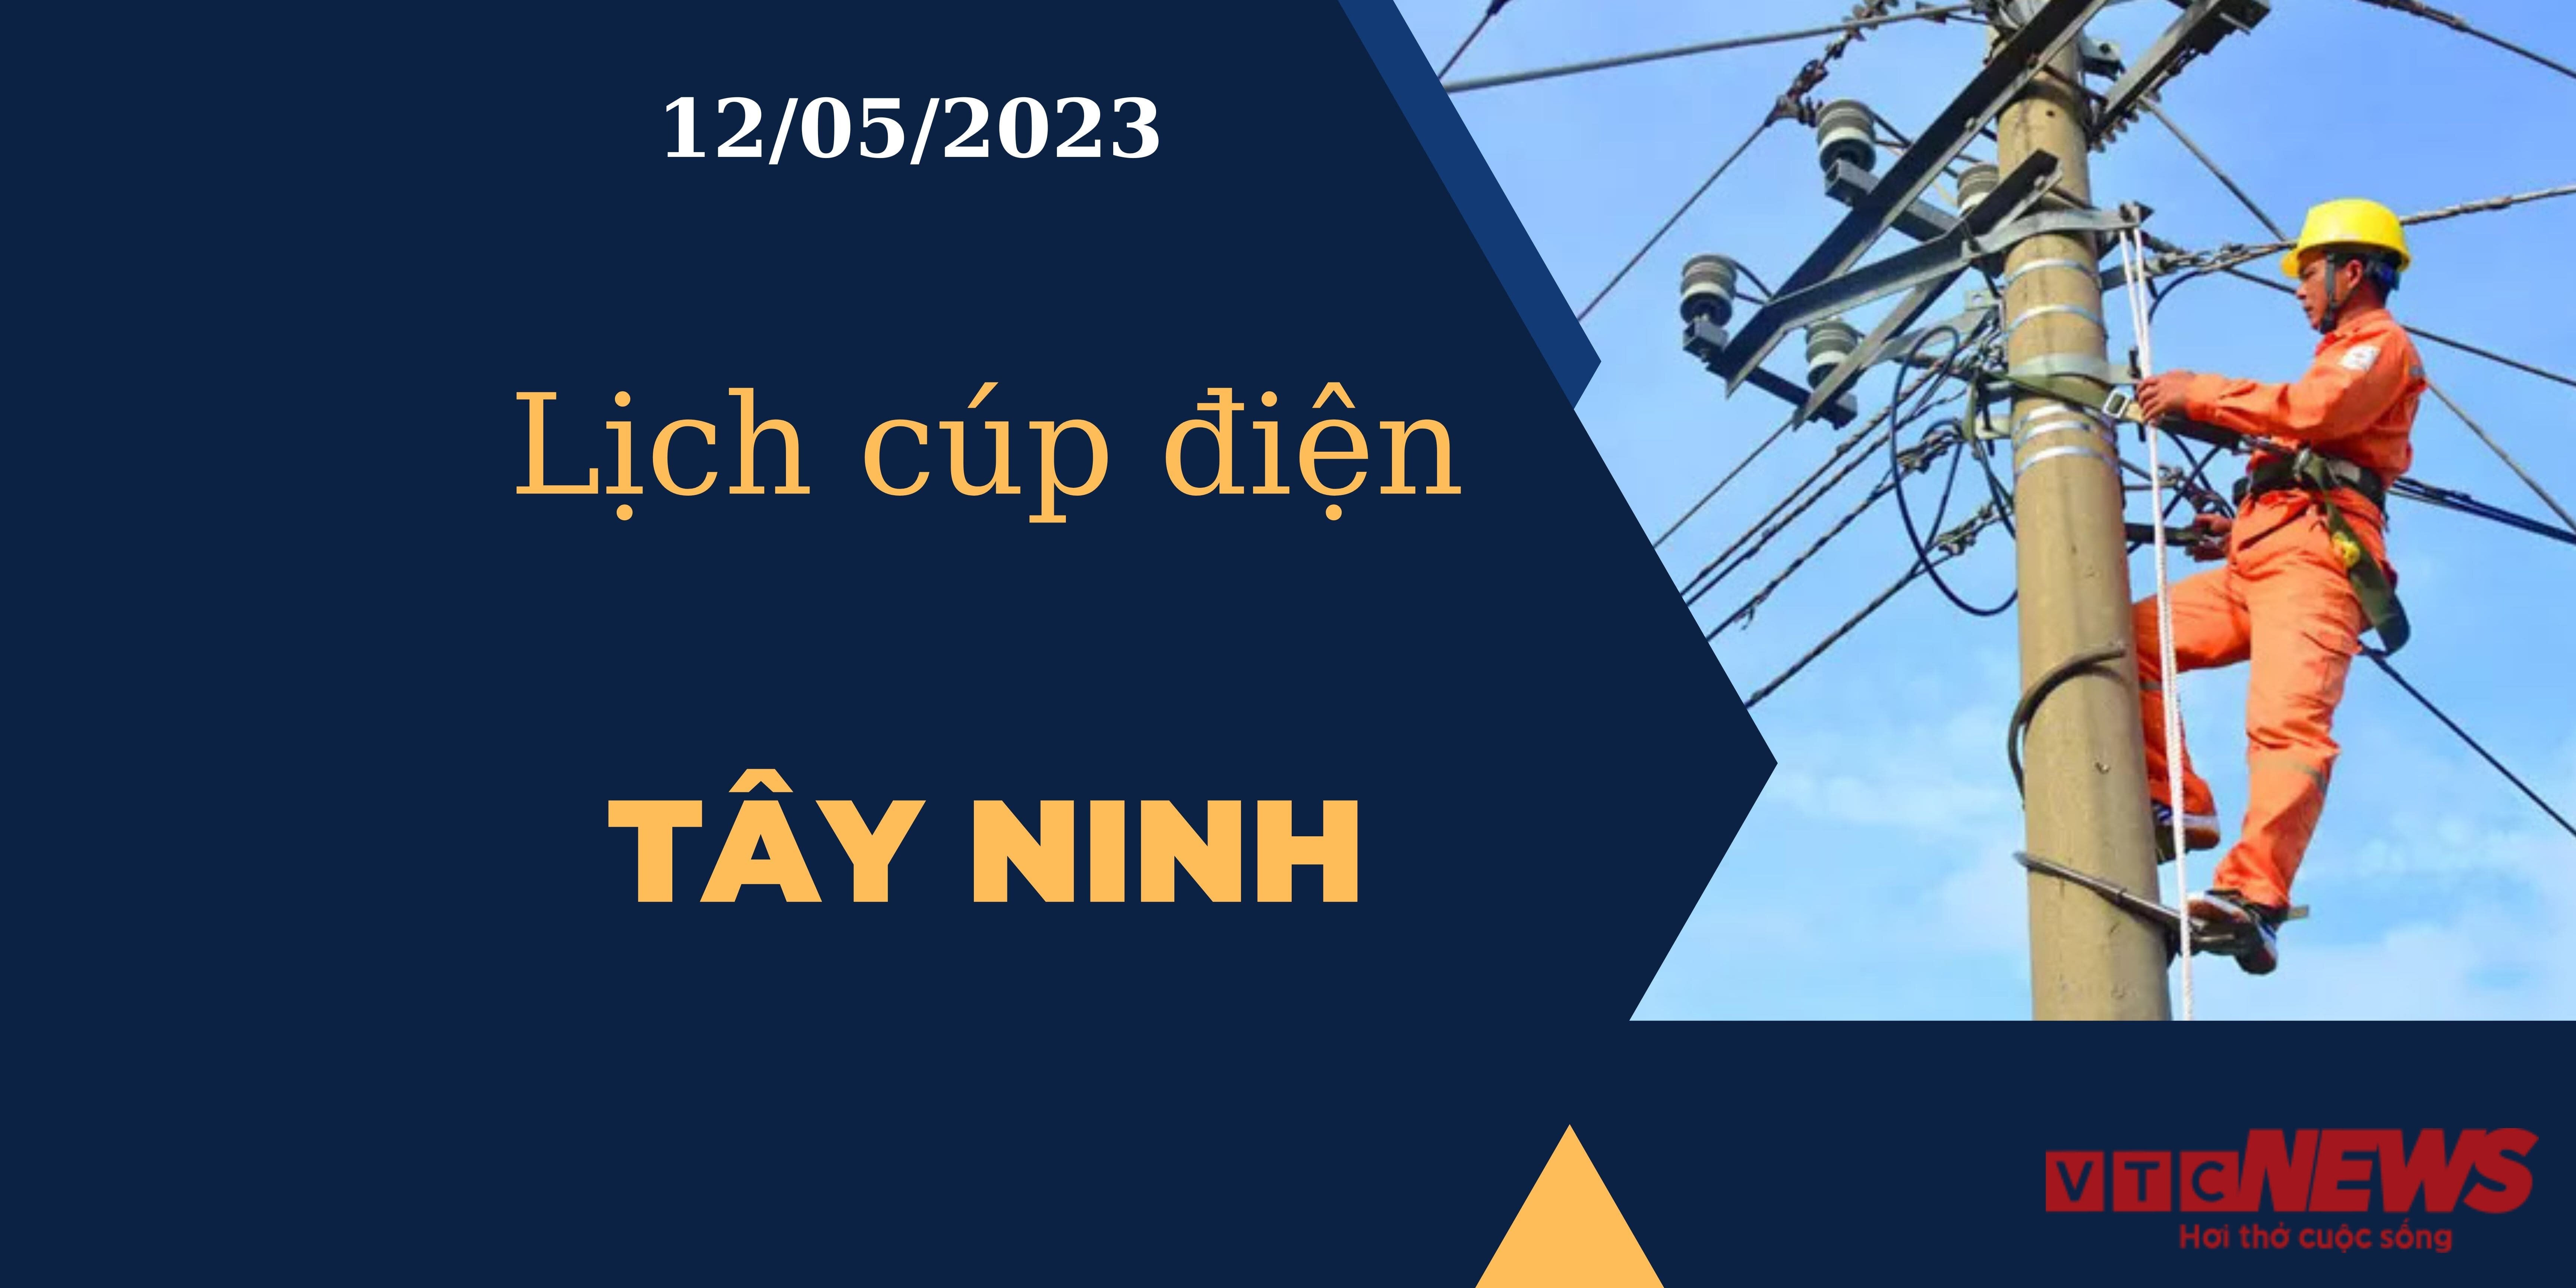 Lịch cúp điện hôm nay tại  Tây Ninh ngày 12/05/2023 - 1